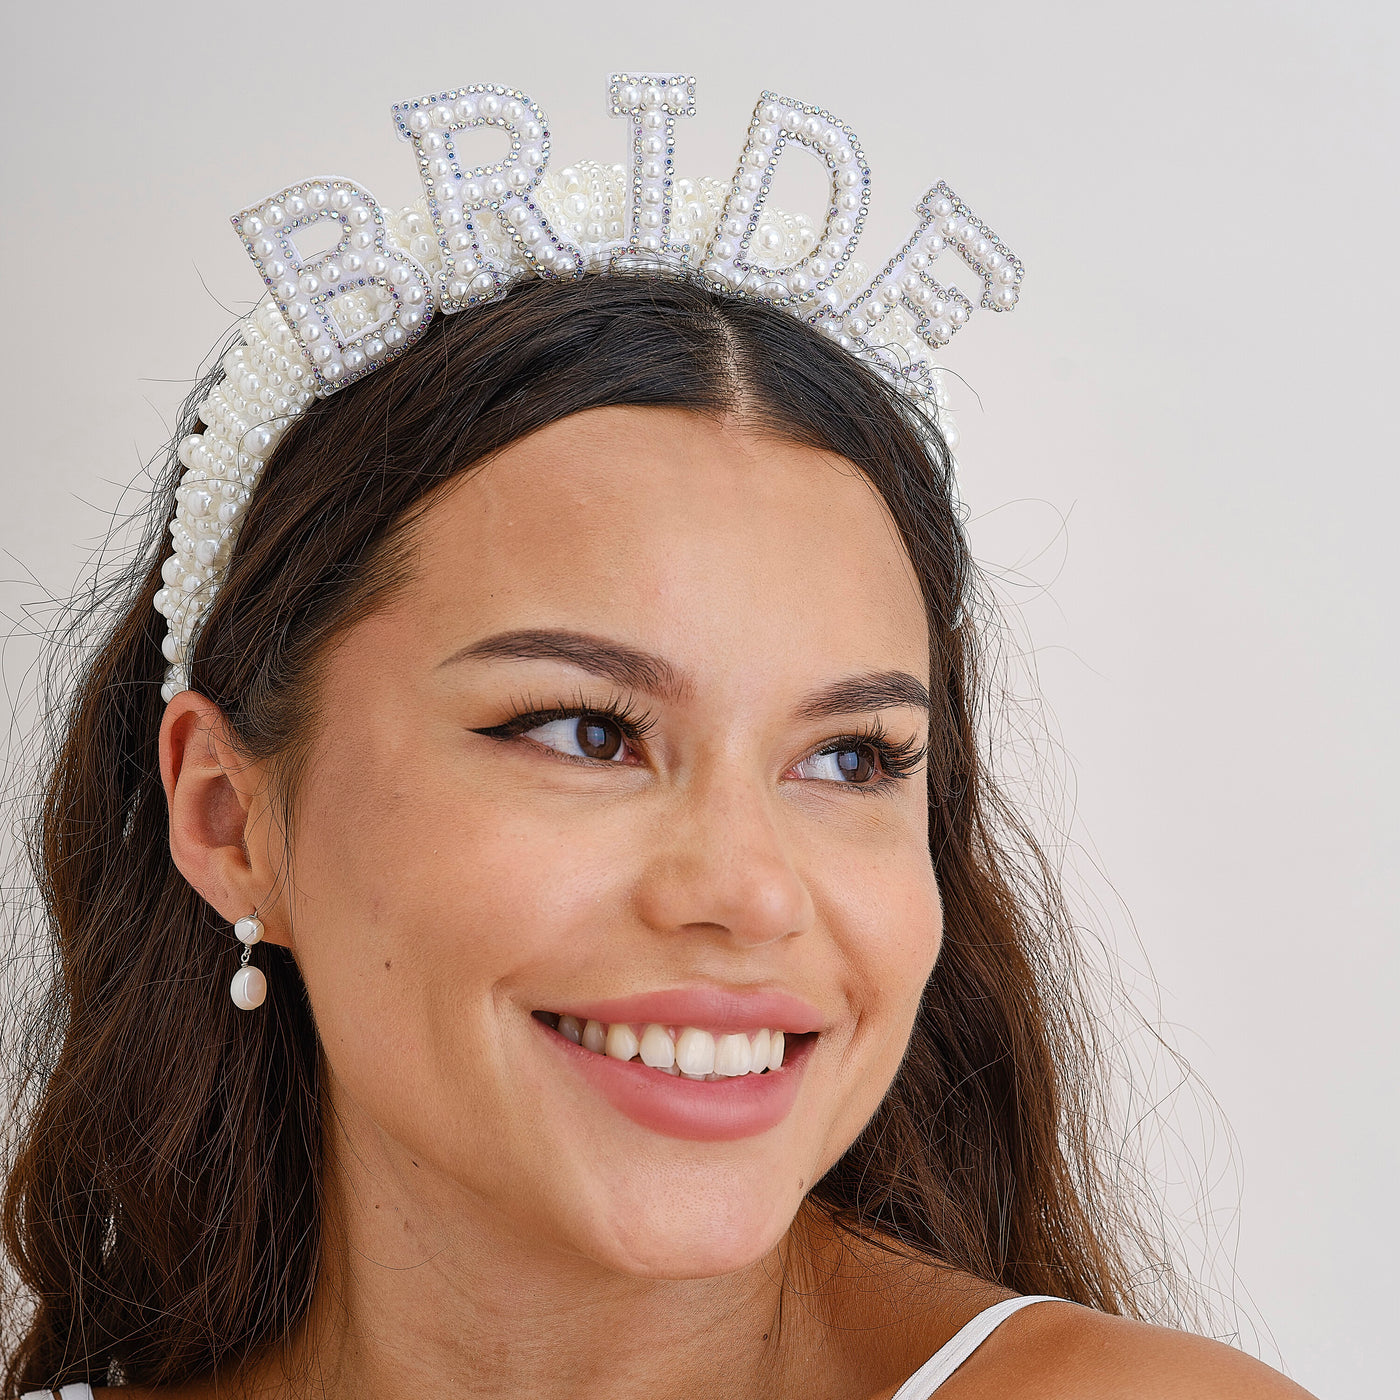 Beaded headband for the bride